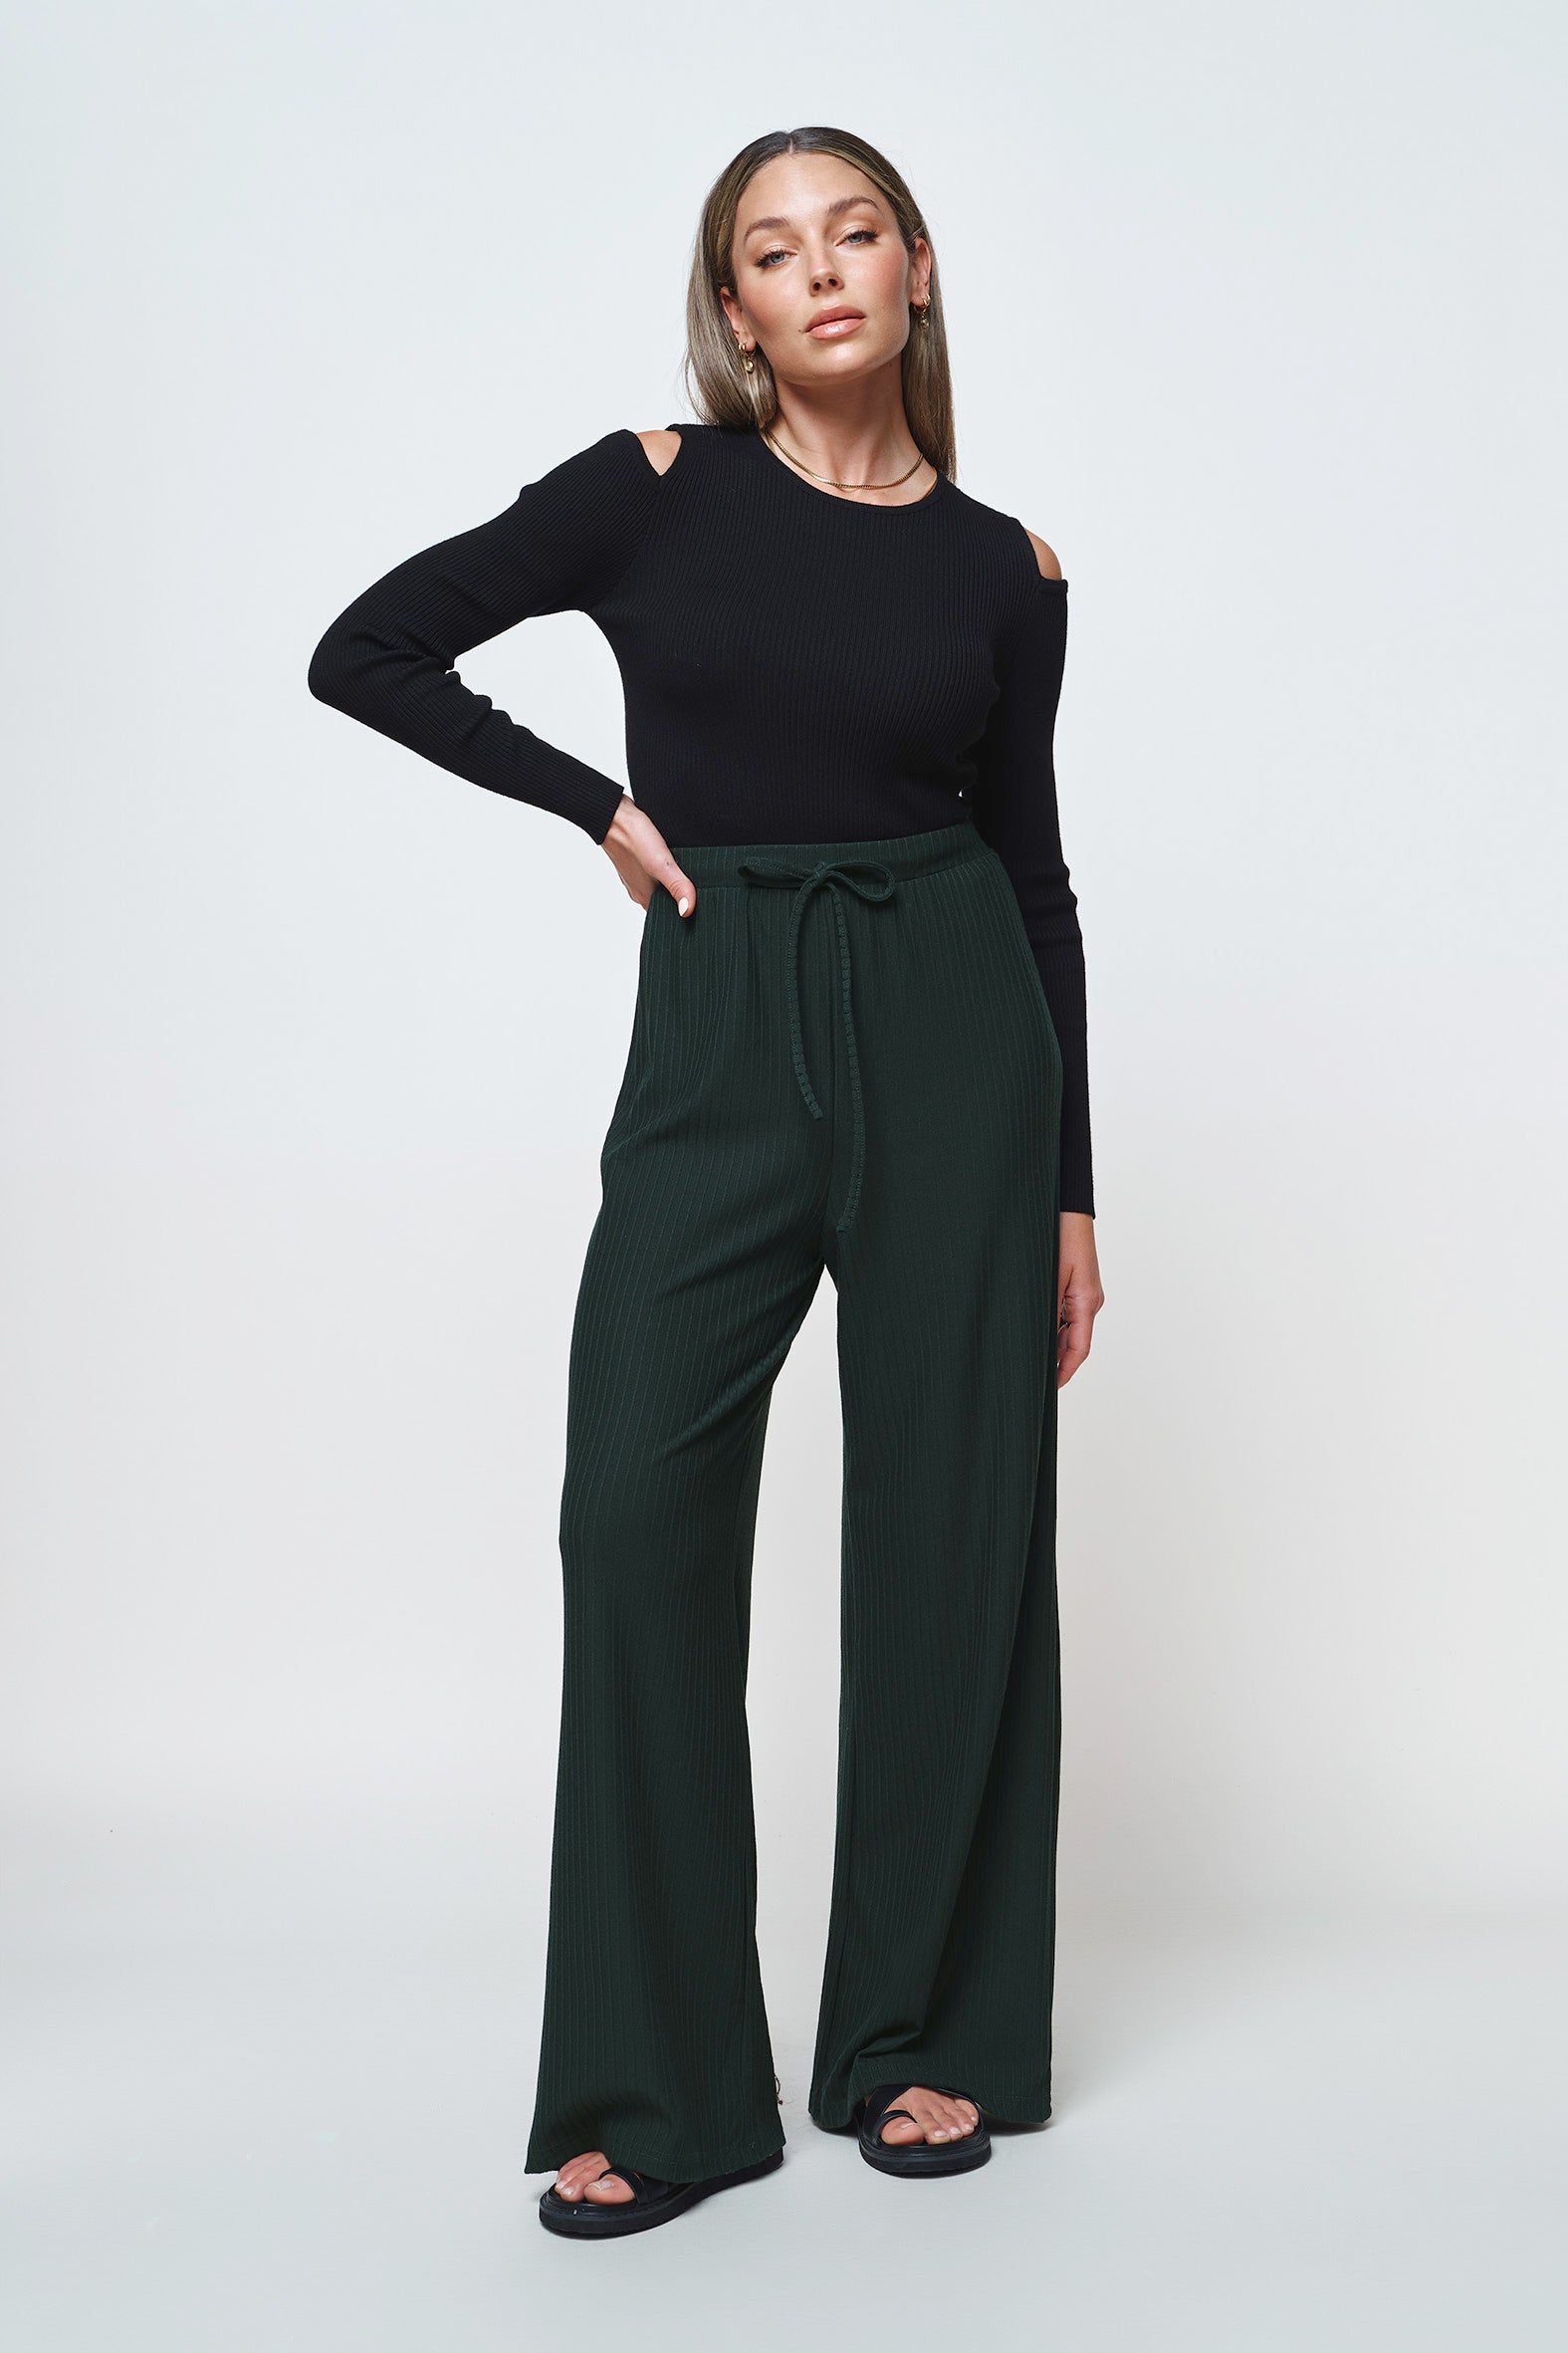 ASOS Green Pleated Wide Leg Flowy Pants Women's Size 0 - beyond